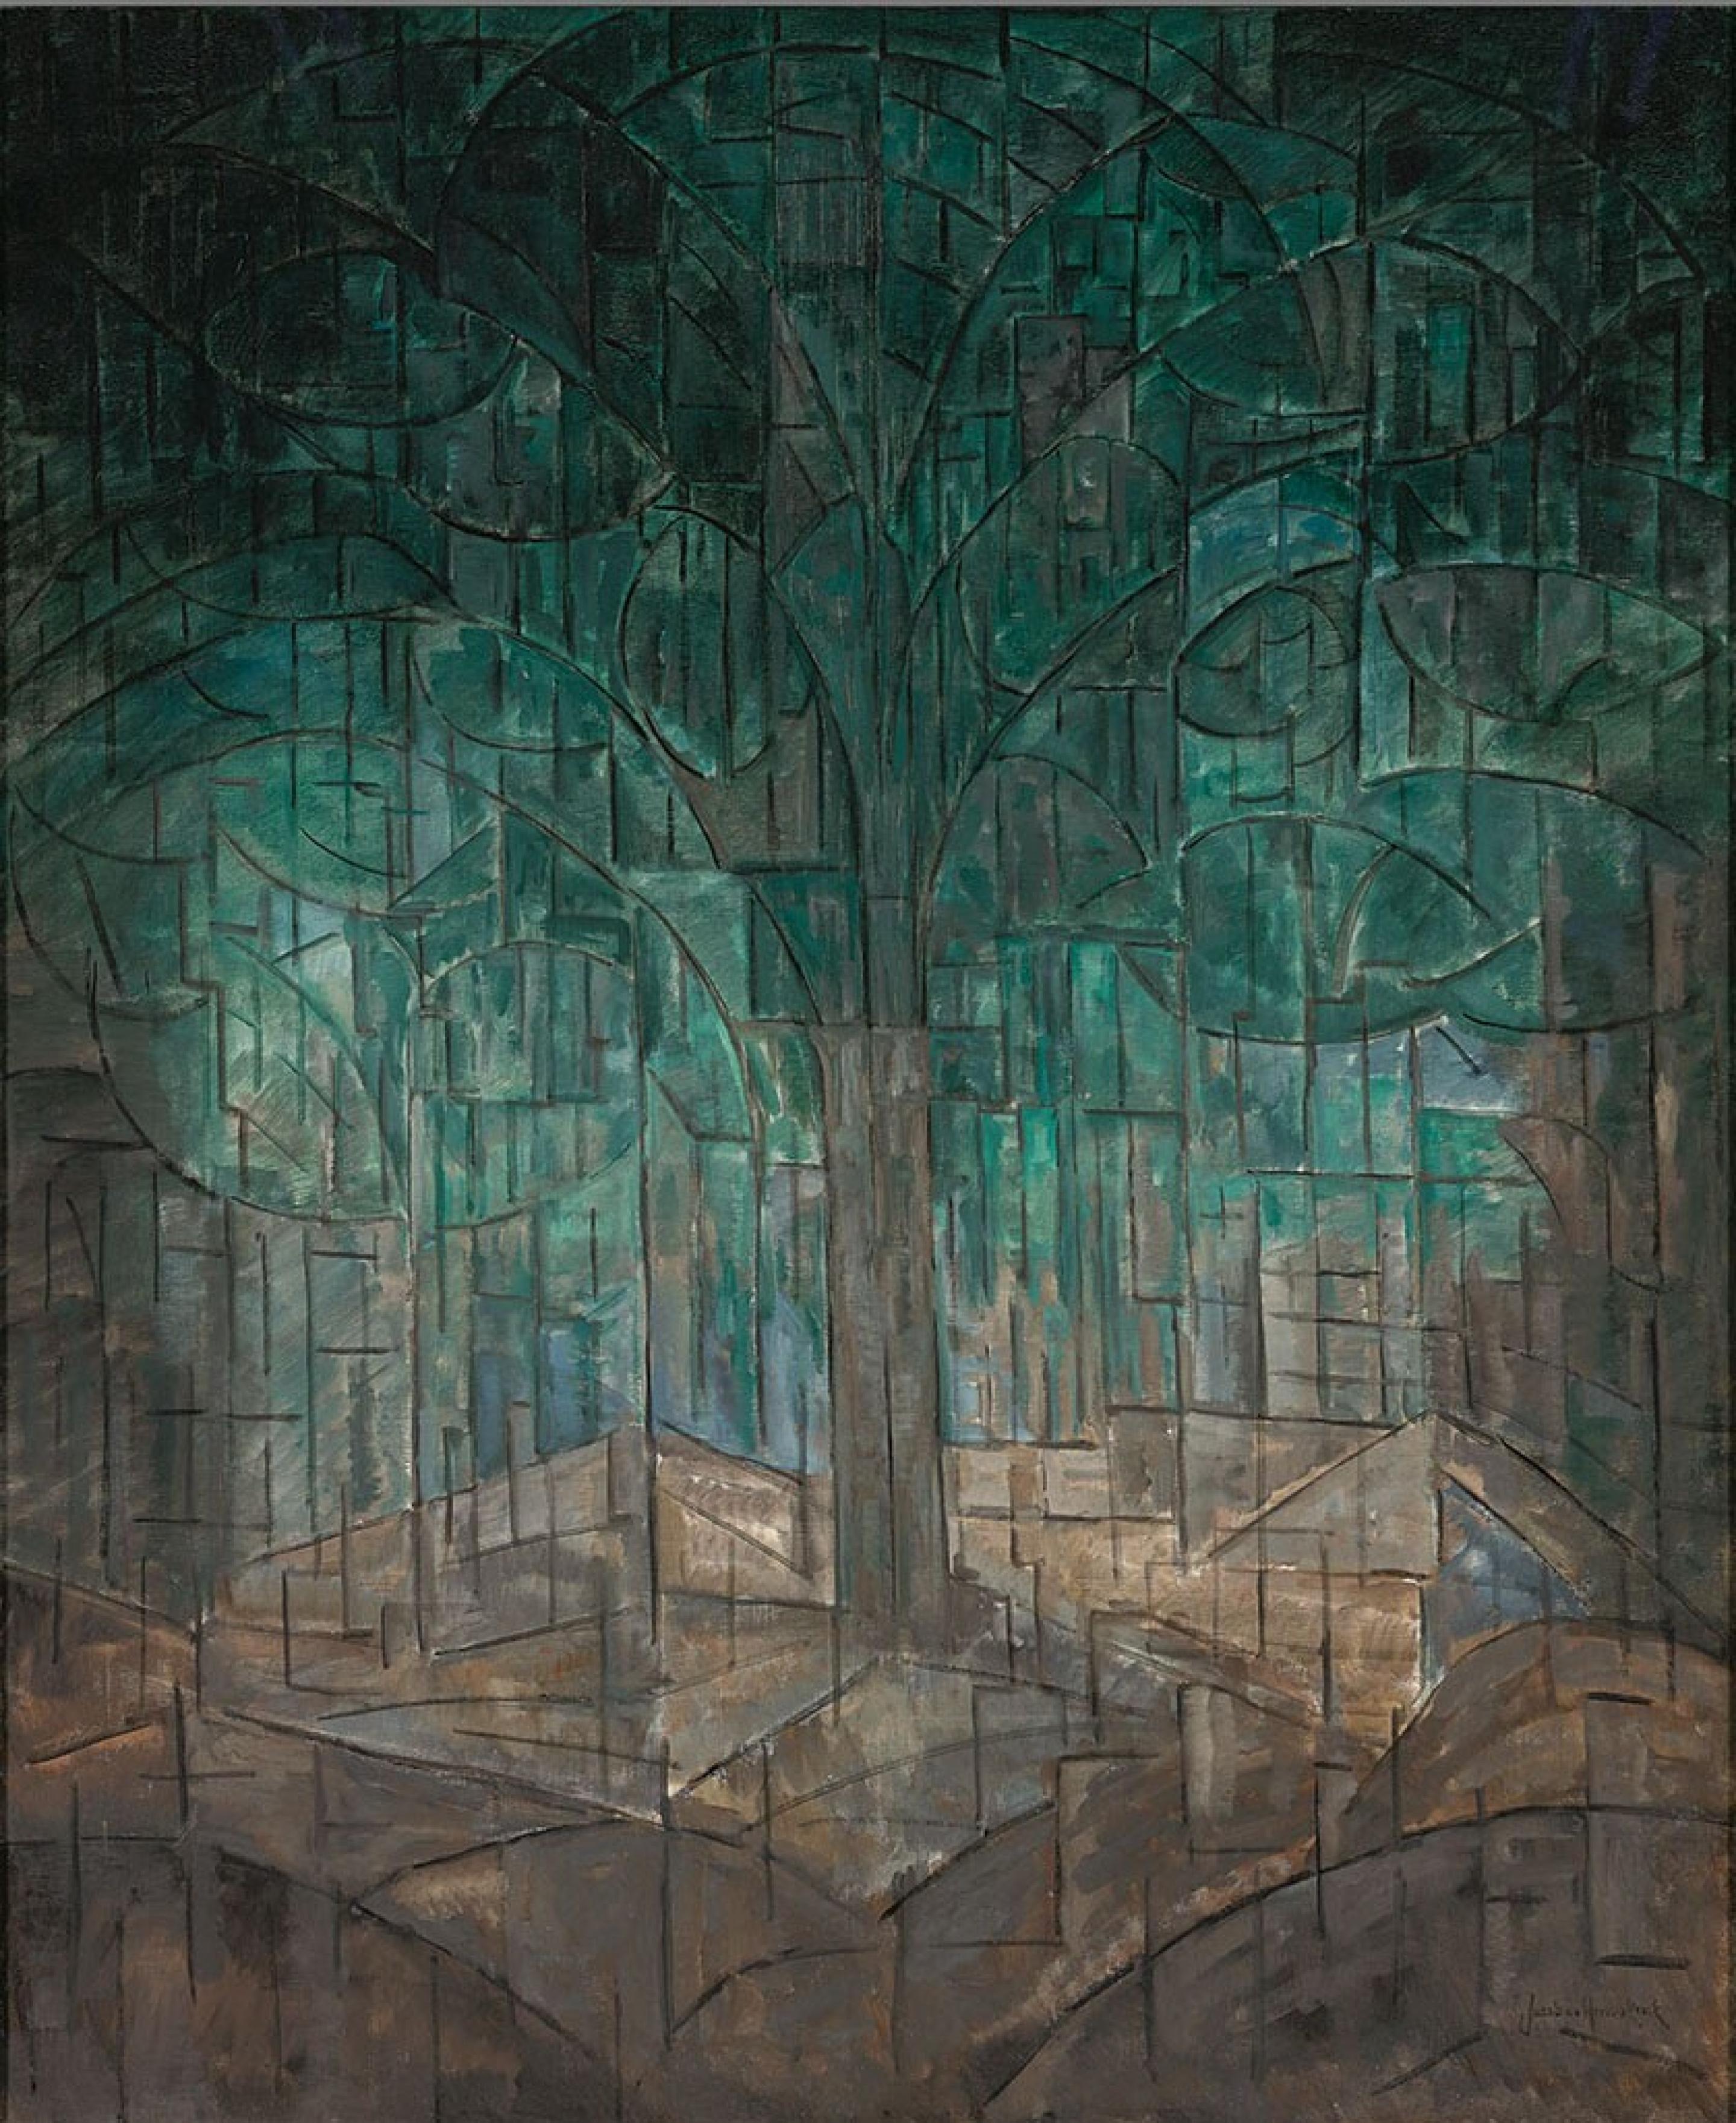 构图第6号 by 雅各巴 范·希姆斯克尔克 - c. 1913 - 105.5 x 120.5 cm 